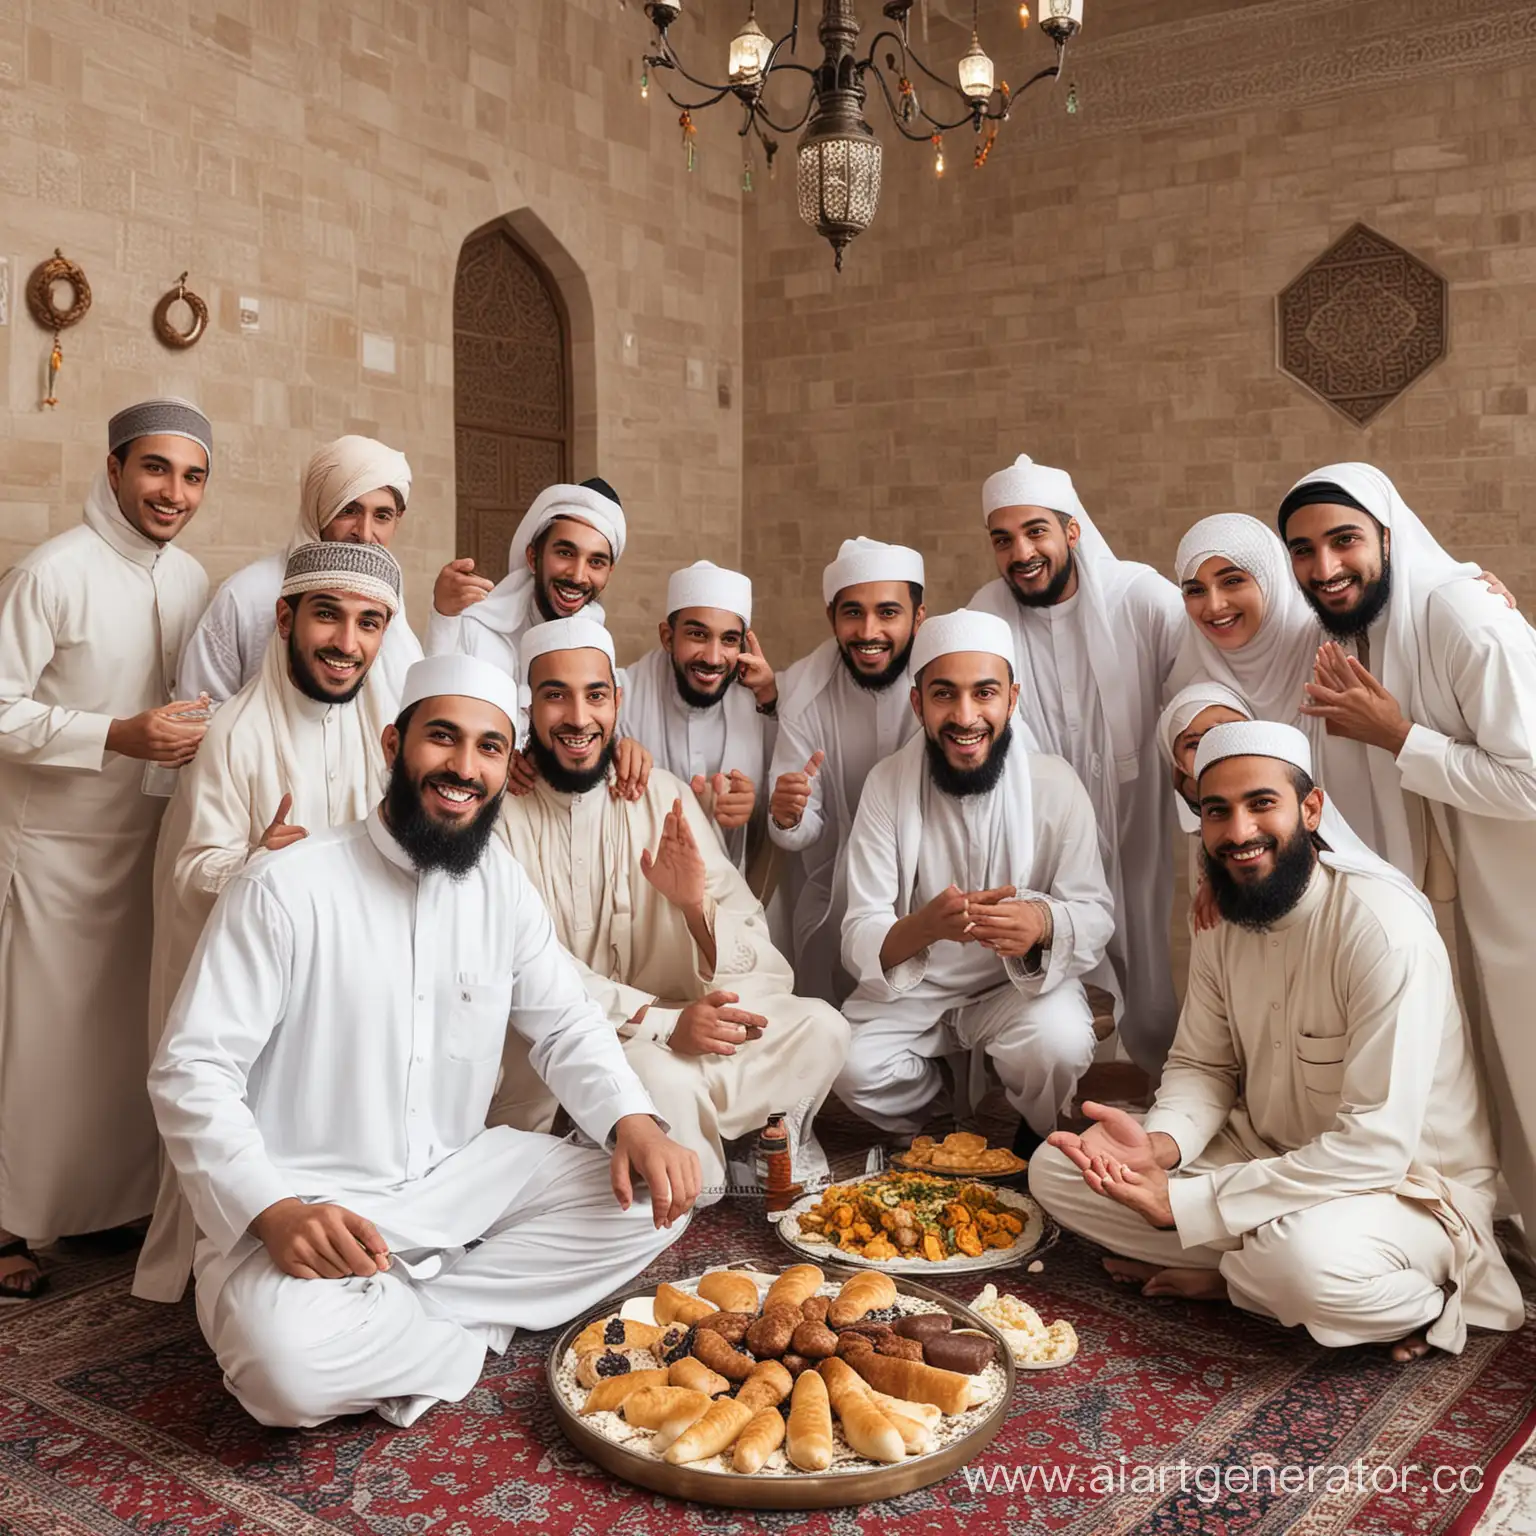 компания счастливых мусульман, отмечающих праздник и халяль
